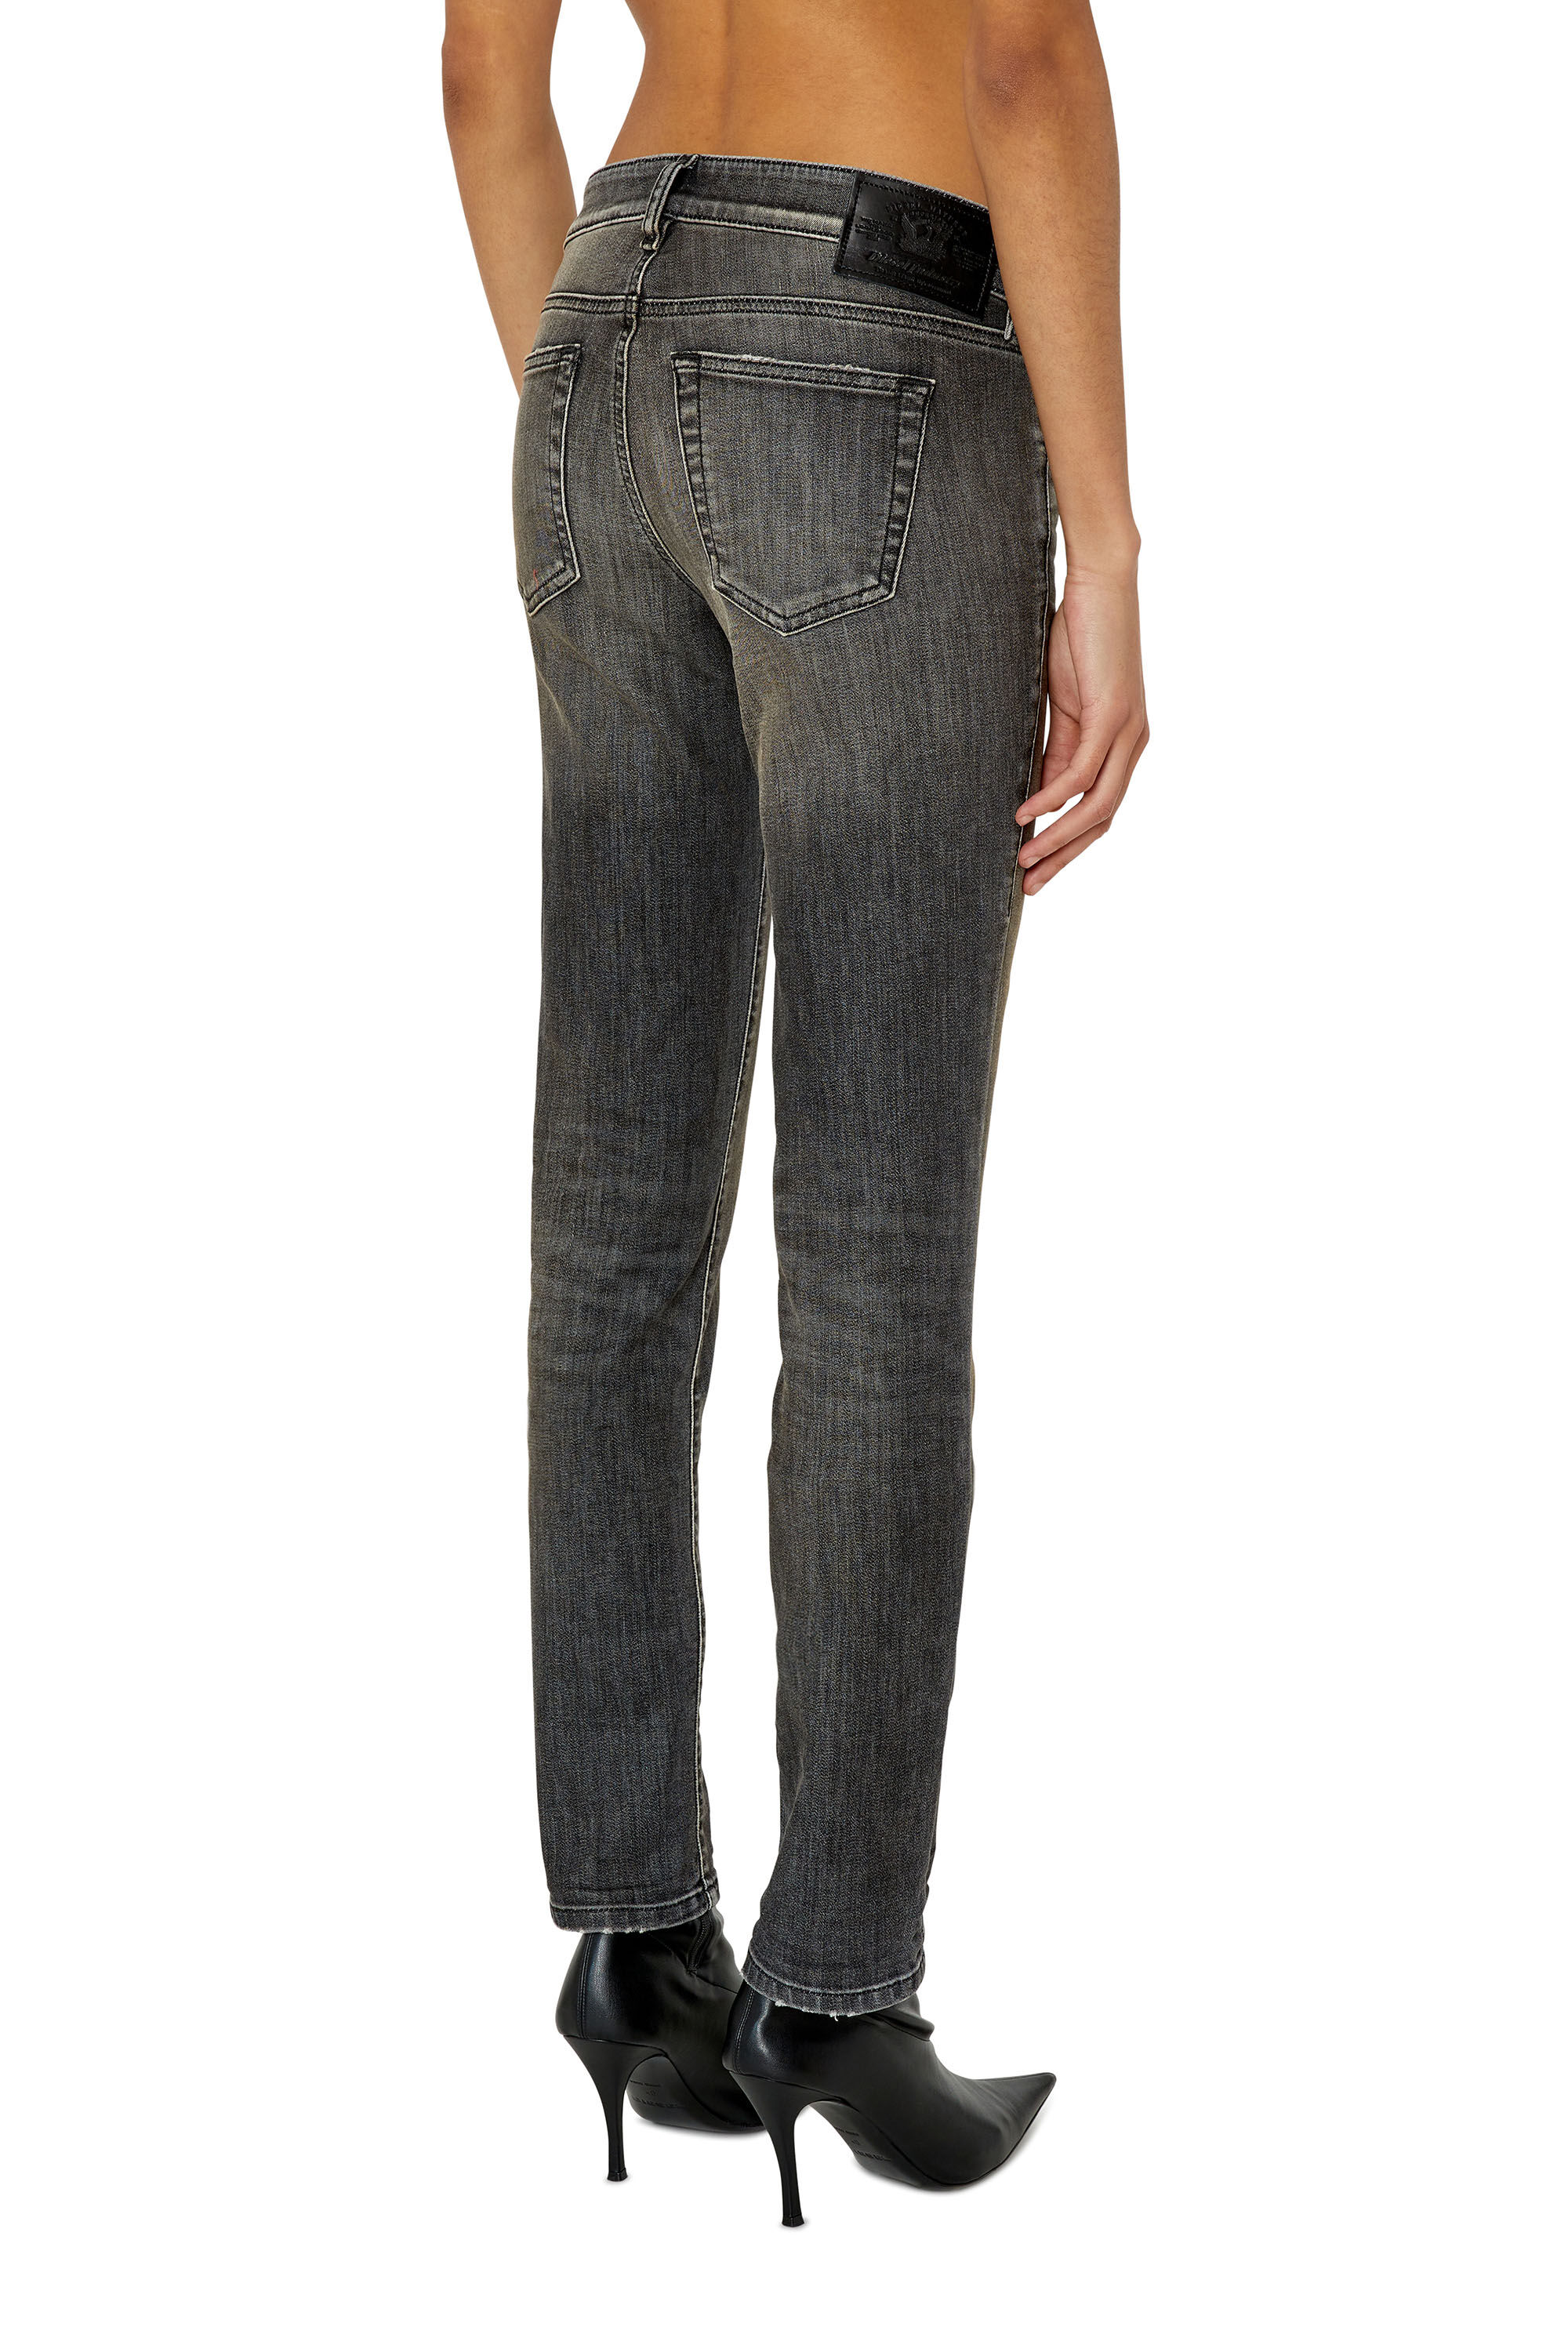 Diesel - Slim D-Ollies JoggJeans® 09F01, Black/Dark grey - Image 4